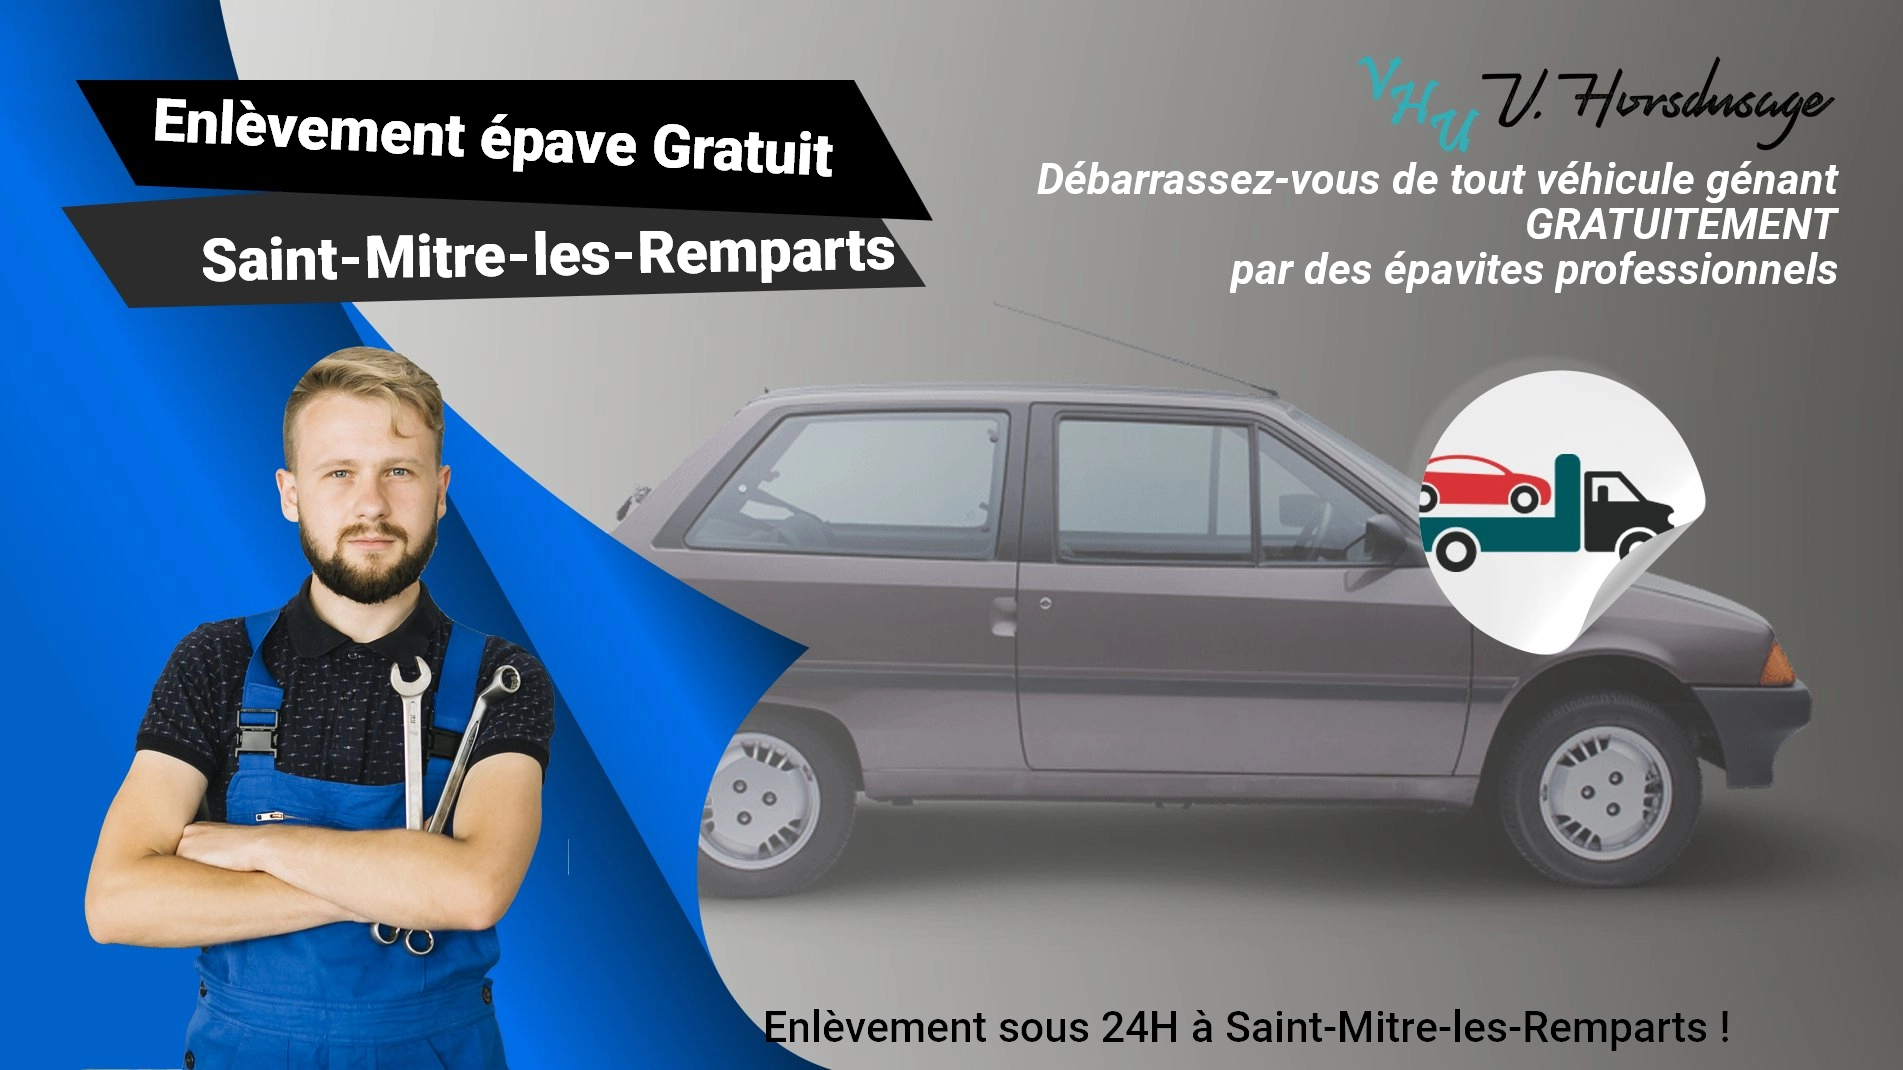 Pour un enlèvement gratuit à Saint-Mitre-les-Remparts, contactez nos épavistes agréé VHU